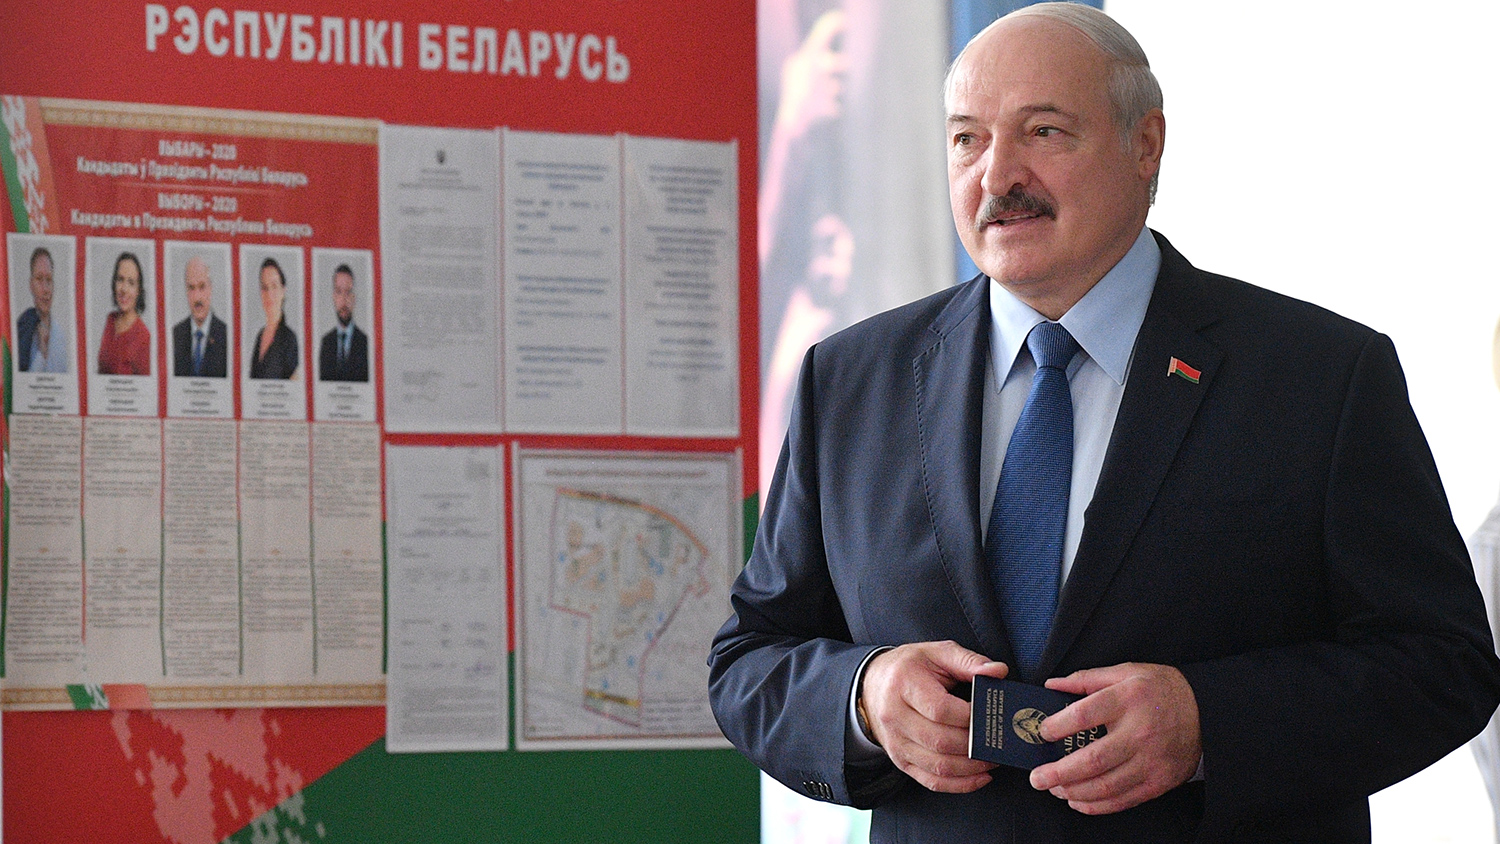 СМИ пояснили, ожидает ли Лукашенко политическая изоляция после выборов